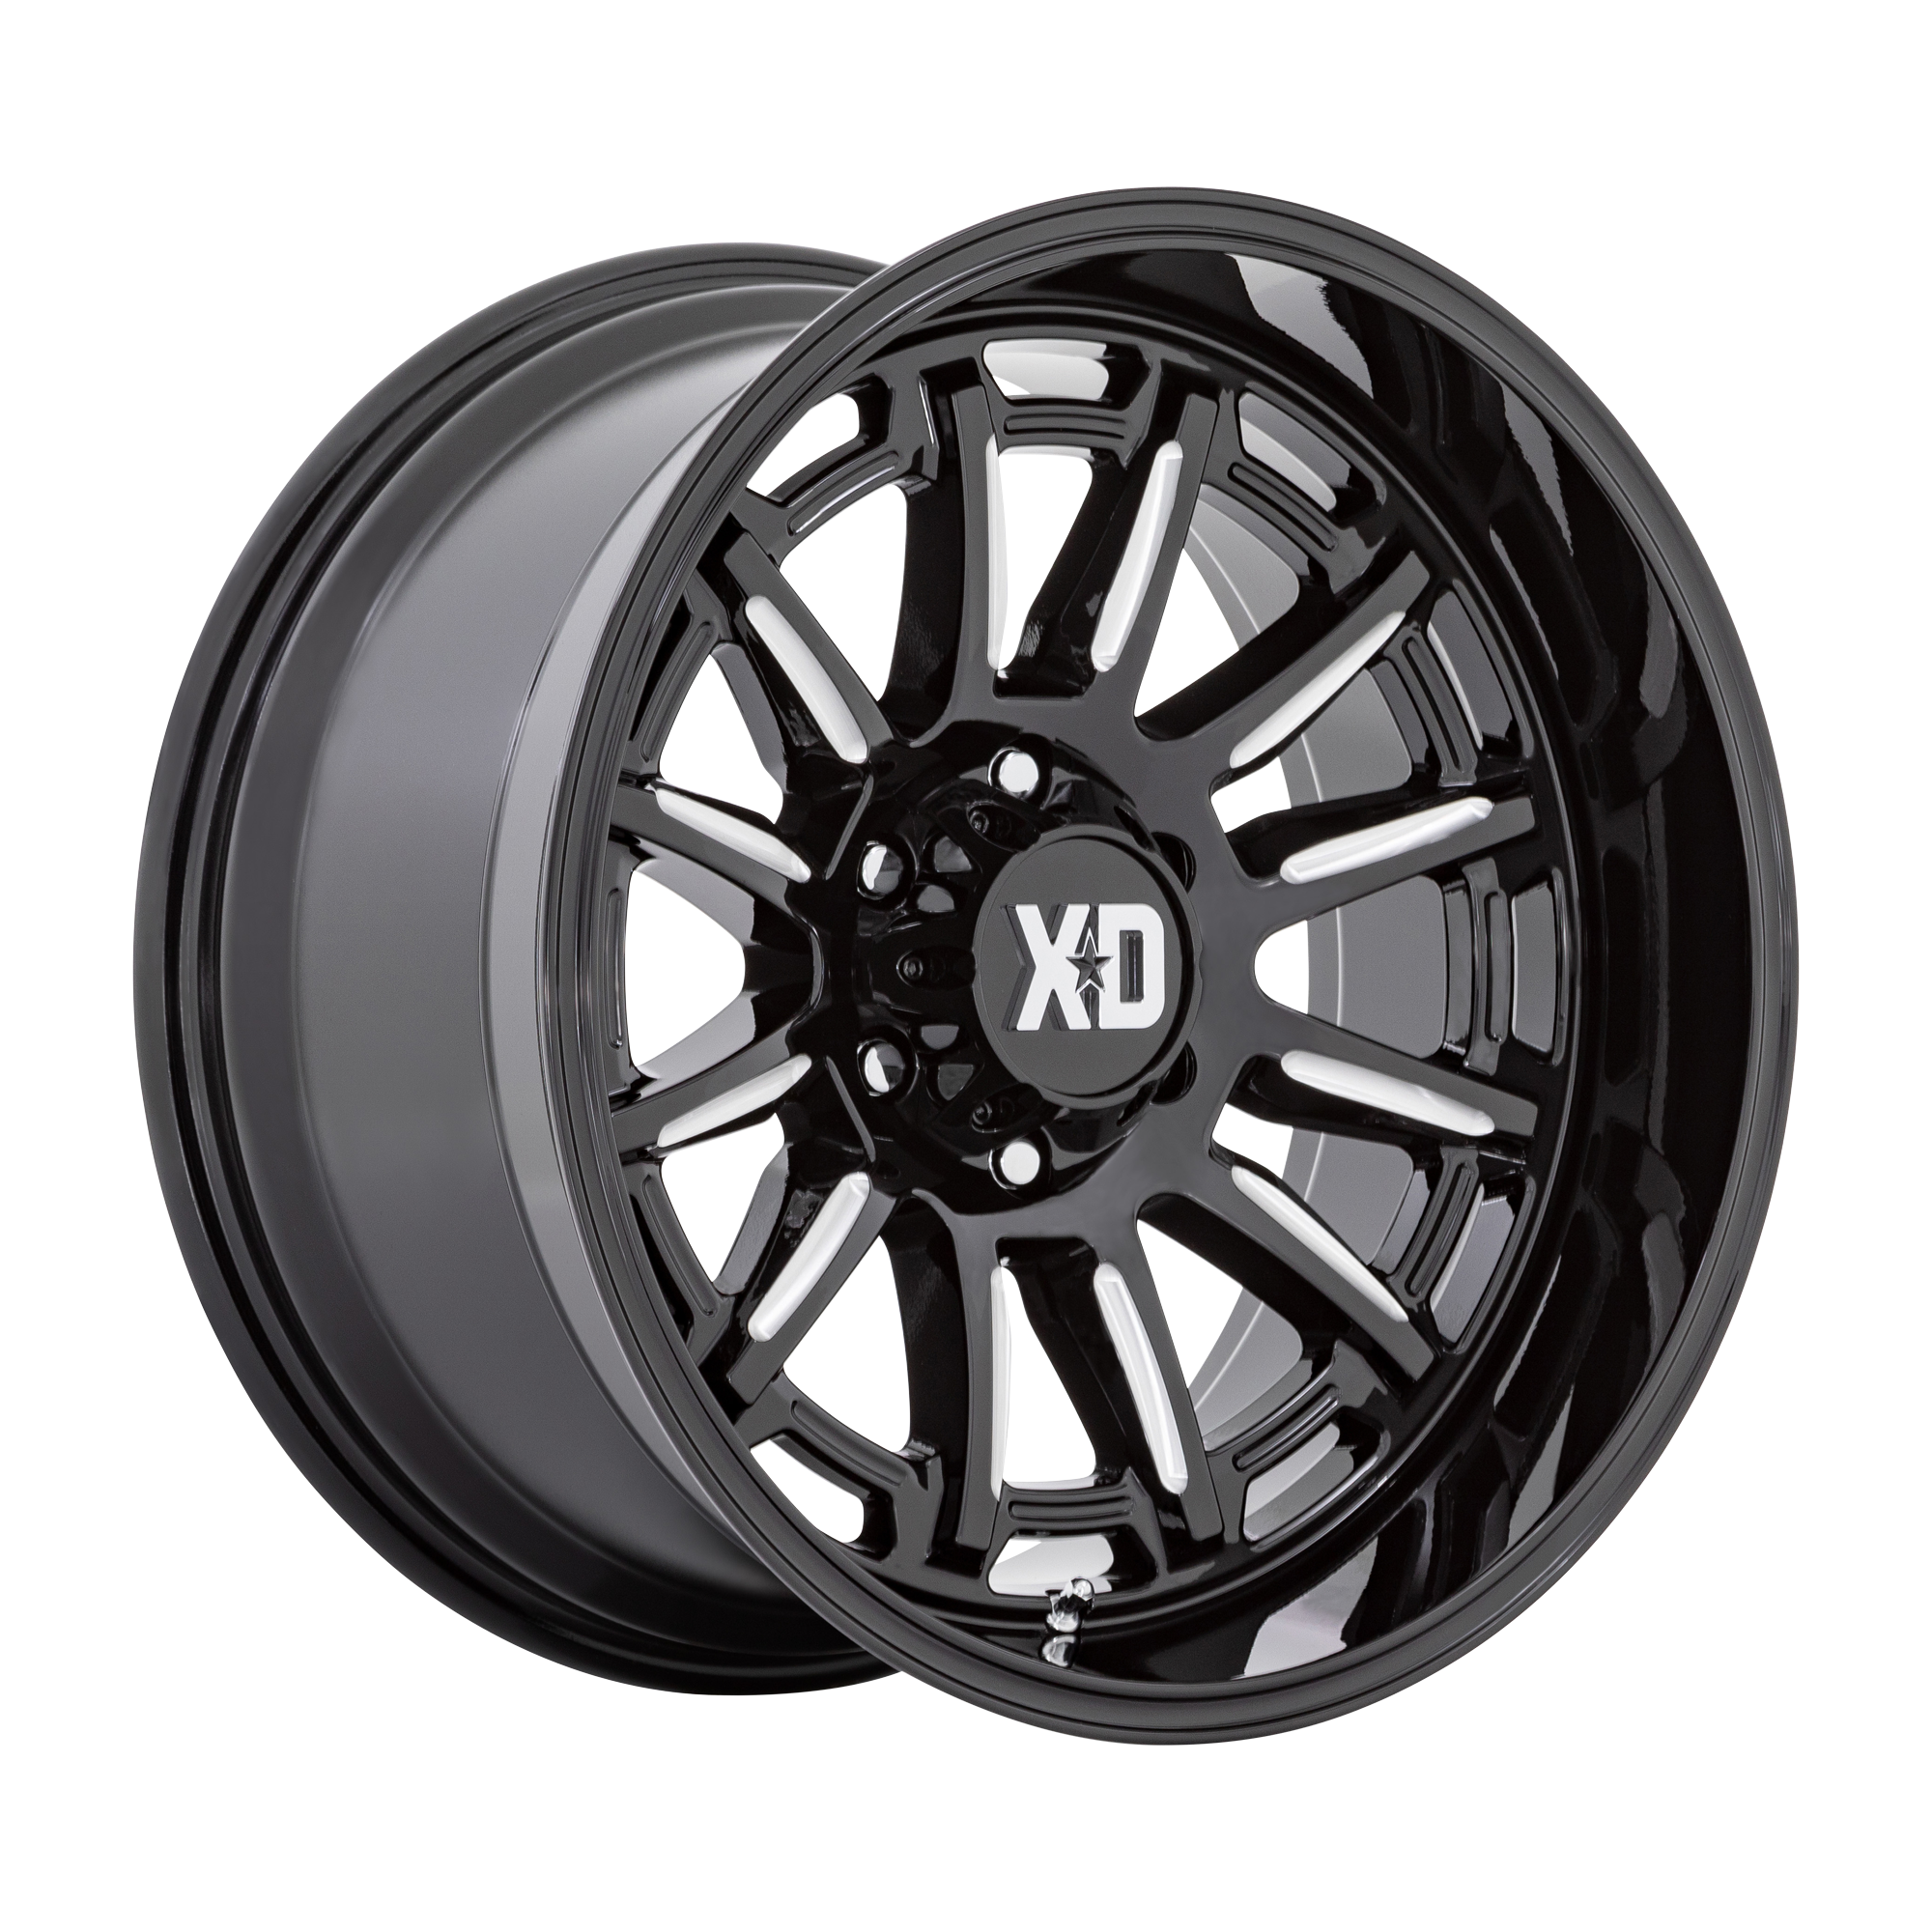 XD 20"x10" Non-Chrome Gloss Black Milled Custom Wheel ARSWCWXD86521068318N